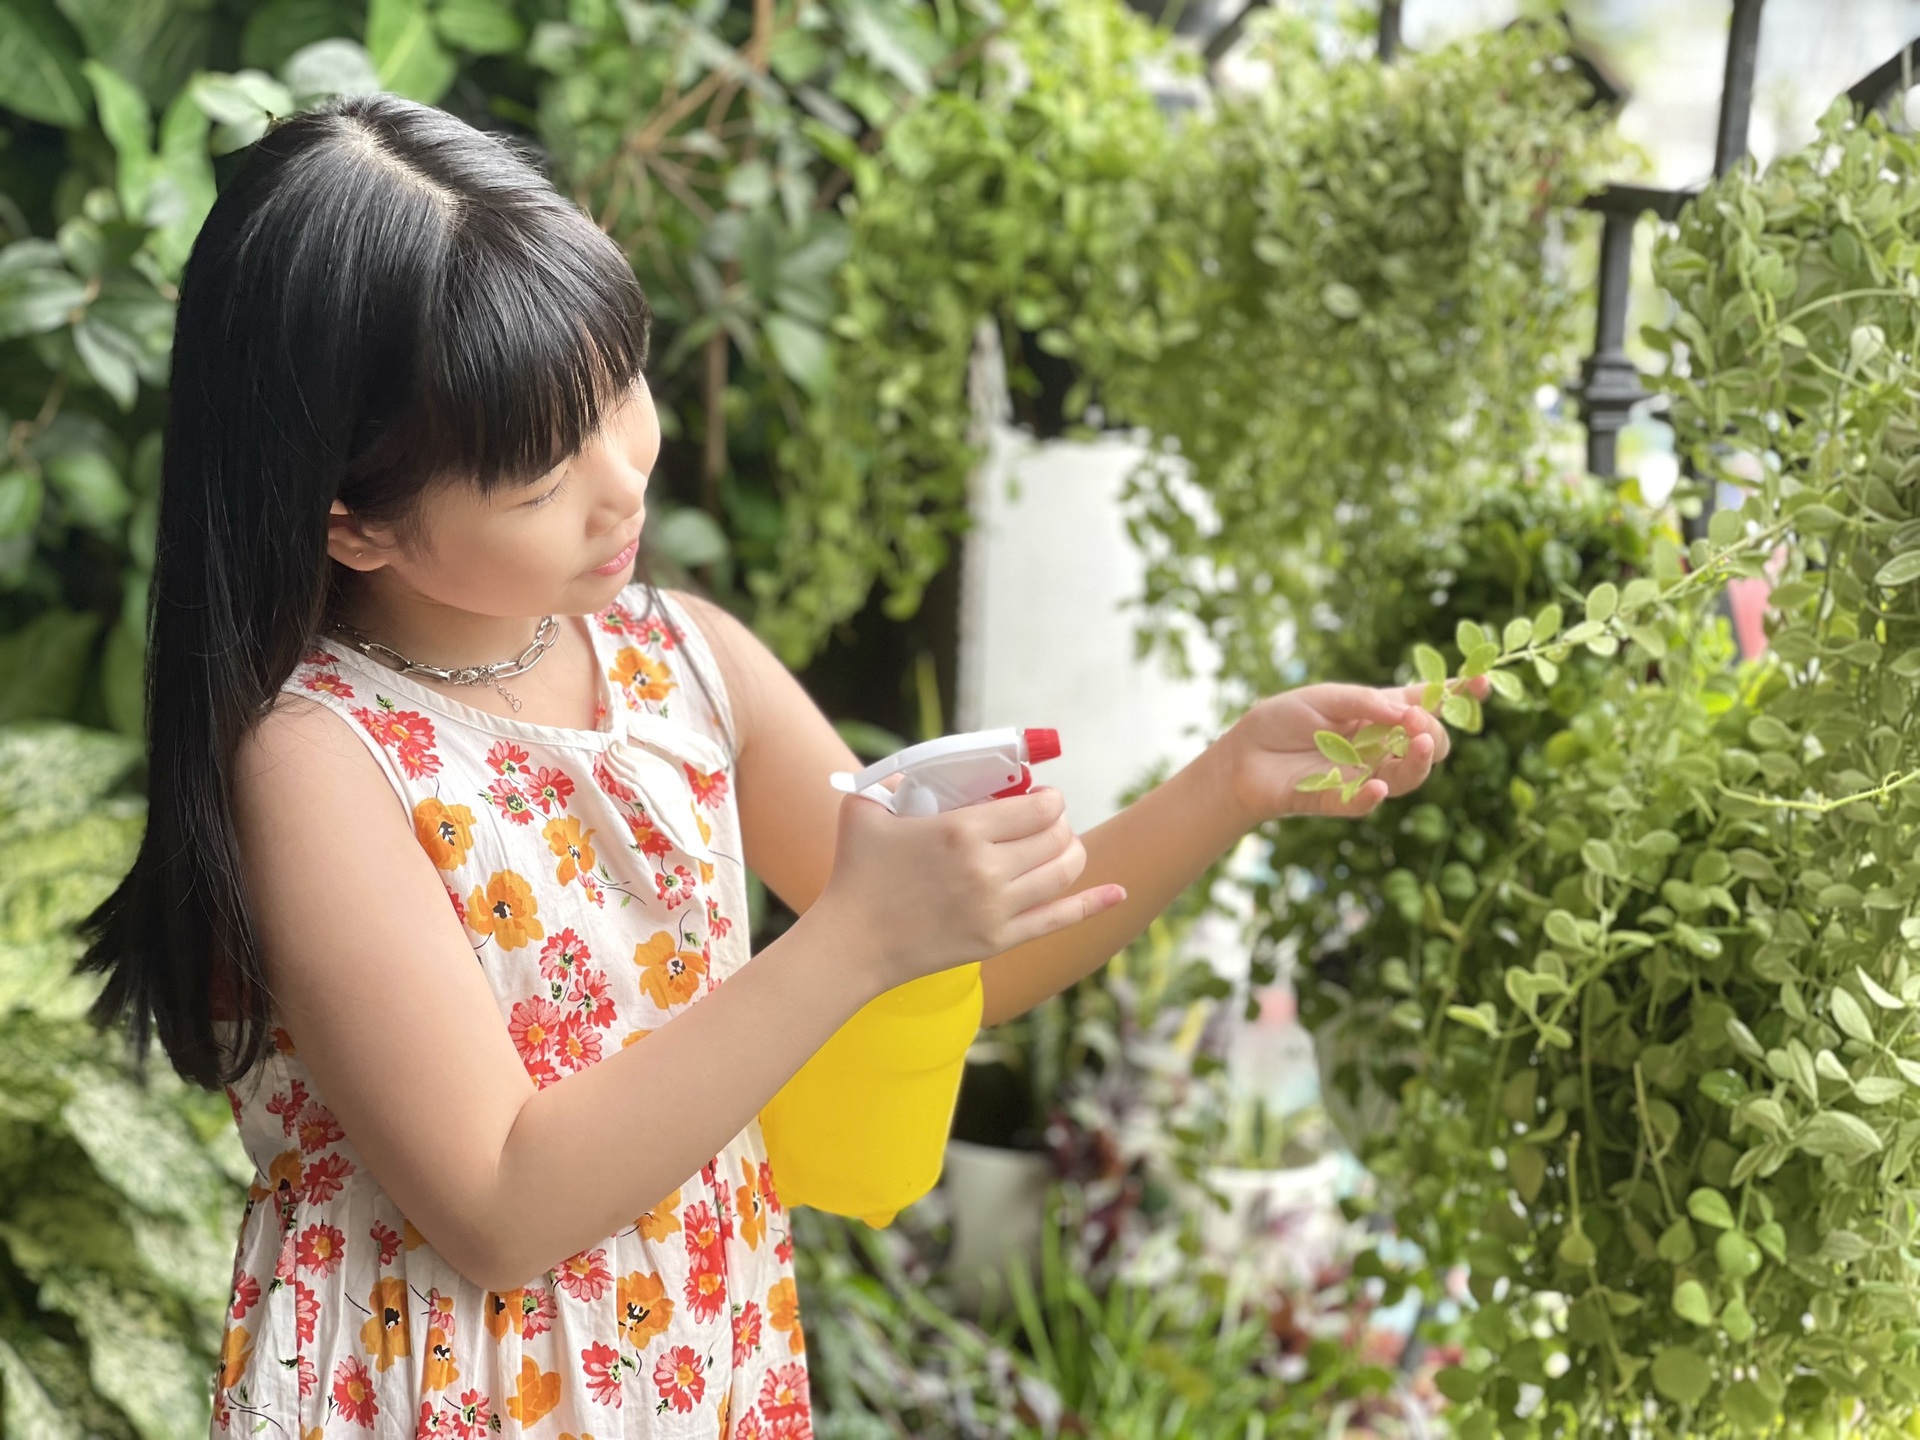 Đã mắt ban công vỏn vẹn 4m2 tựa khu vườn mini với 50 loại cây, hoa ở Hà Nội